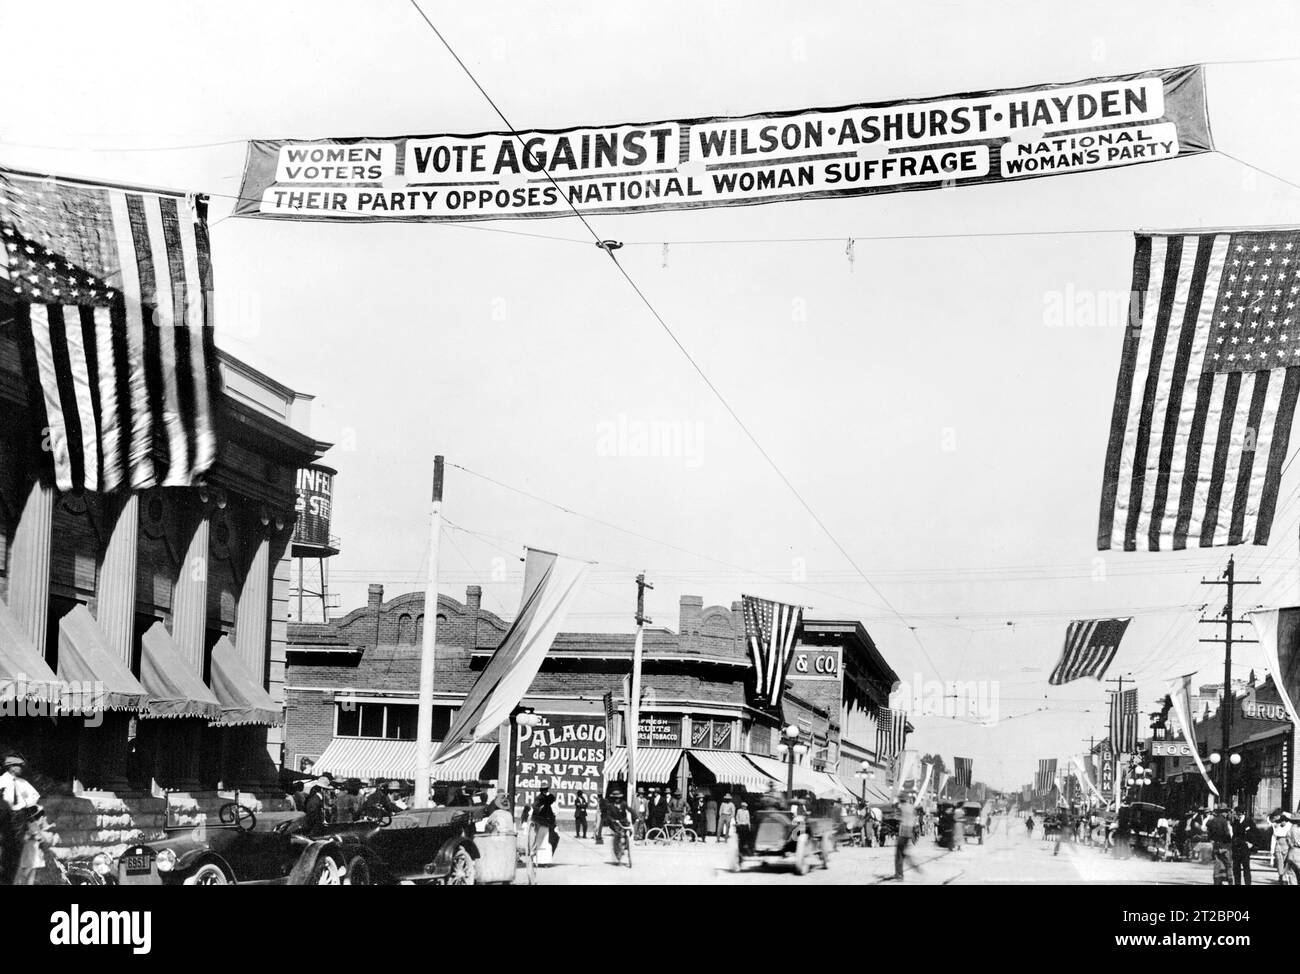 Umstrittenes Banner der National Woman's Party auf der anderen Straßenseite, Tucson, Arizona, USA, National Woman's Party, November 1916 Stockfoto